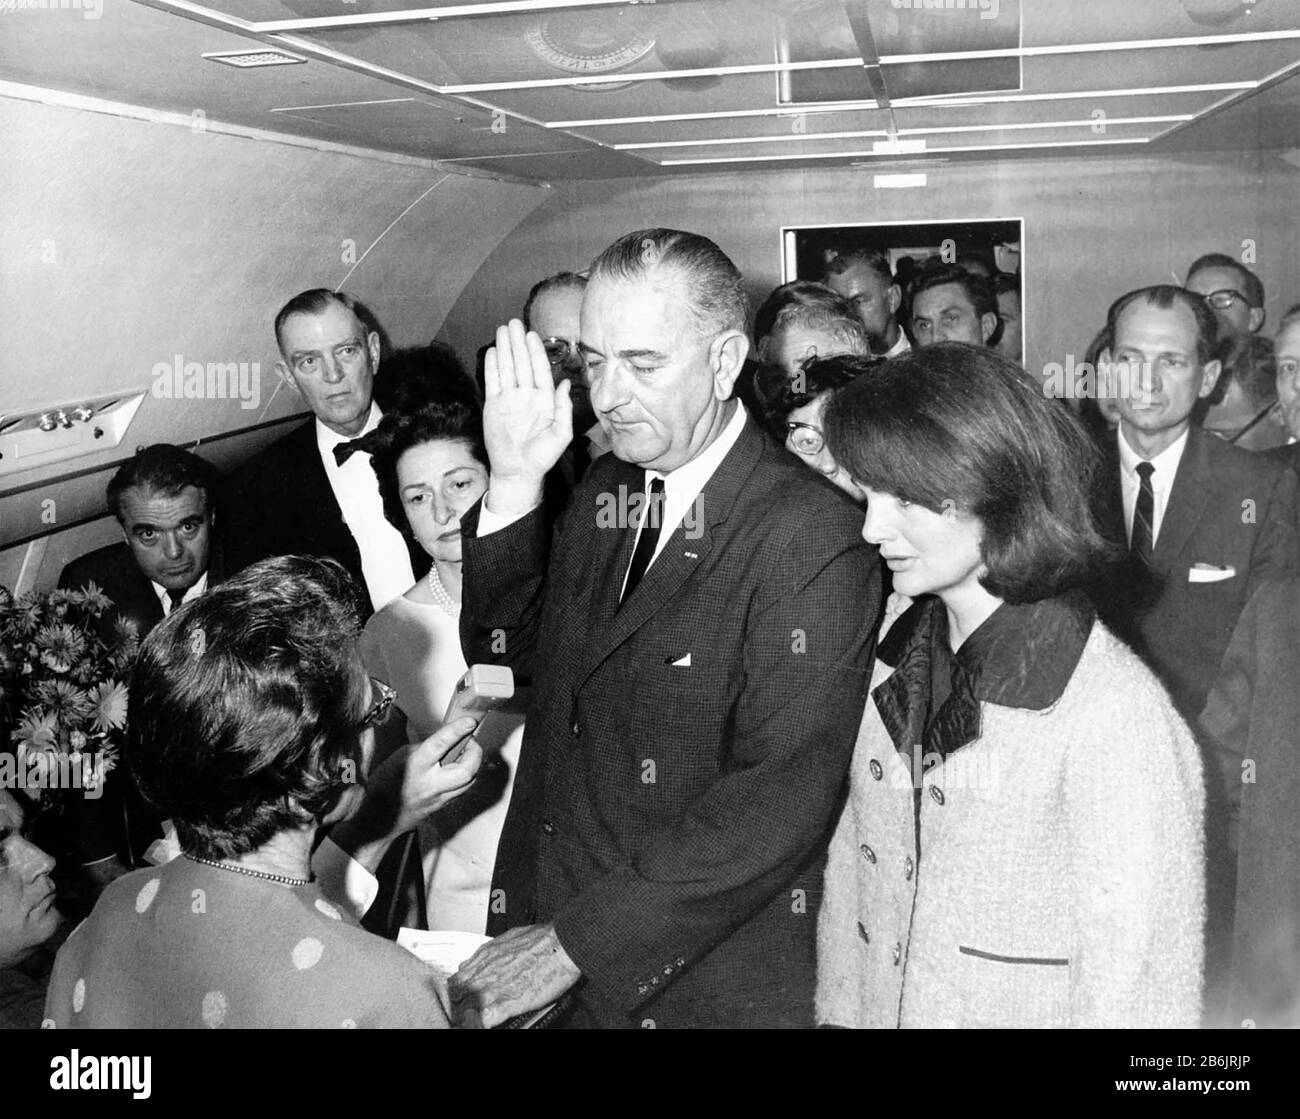 Lyndon B. JOHNSON wird am 22. November 1963 als US-Präsident an Bord der Air Force One vereidigt, die von seiner Frau auf der linken Seite und Jackie Kennedy flankiert wird. Foto: Cecil Stoughton Stockfoto